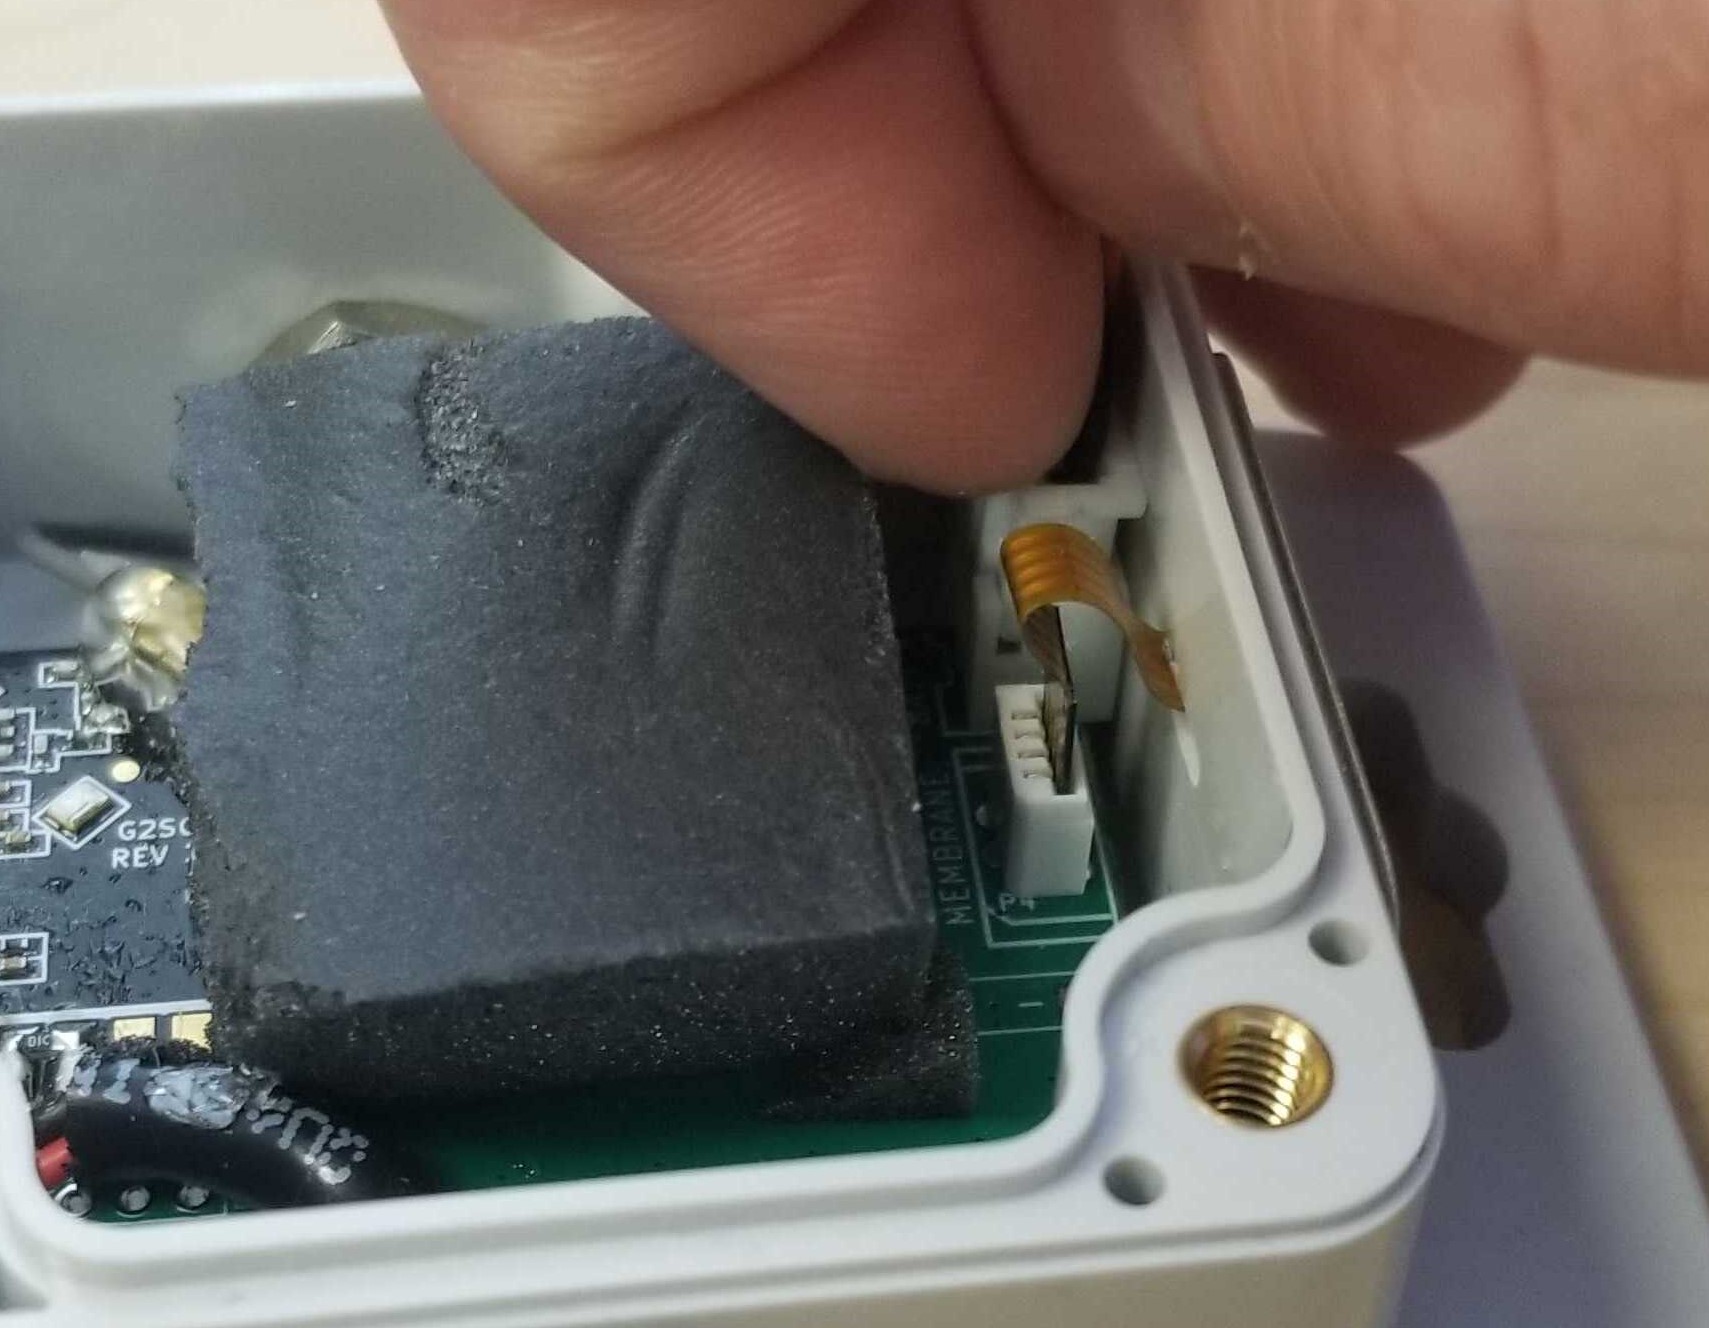 Sensor - Industrial Install Pin